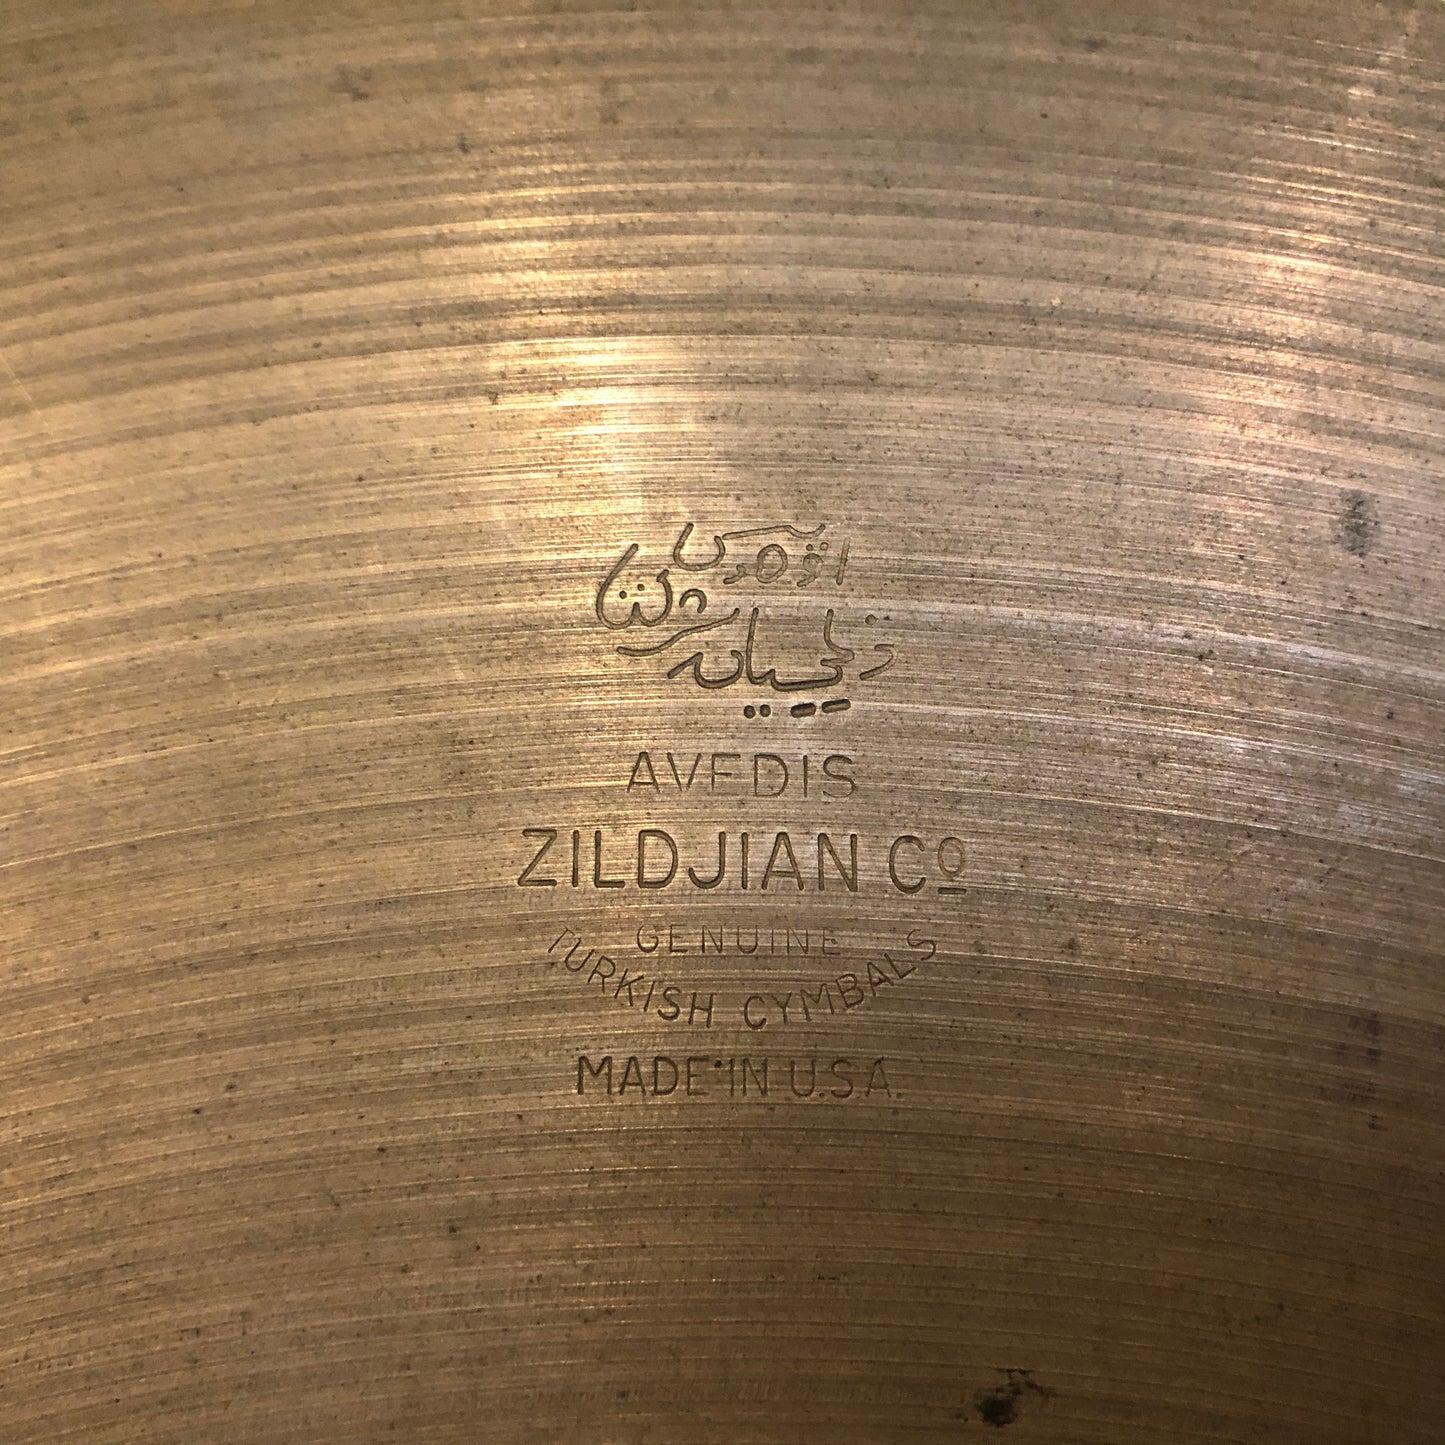 18" Zildjian A 1950s Crash Cymbal 1496g #195 *Video Demo*